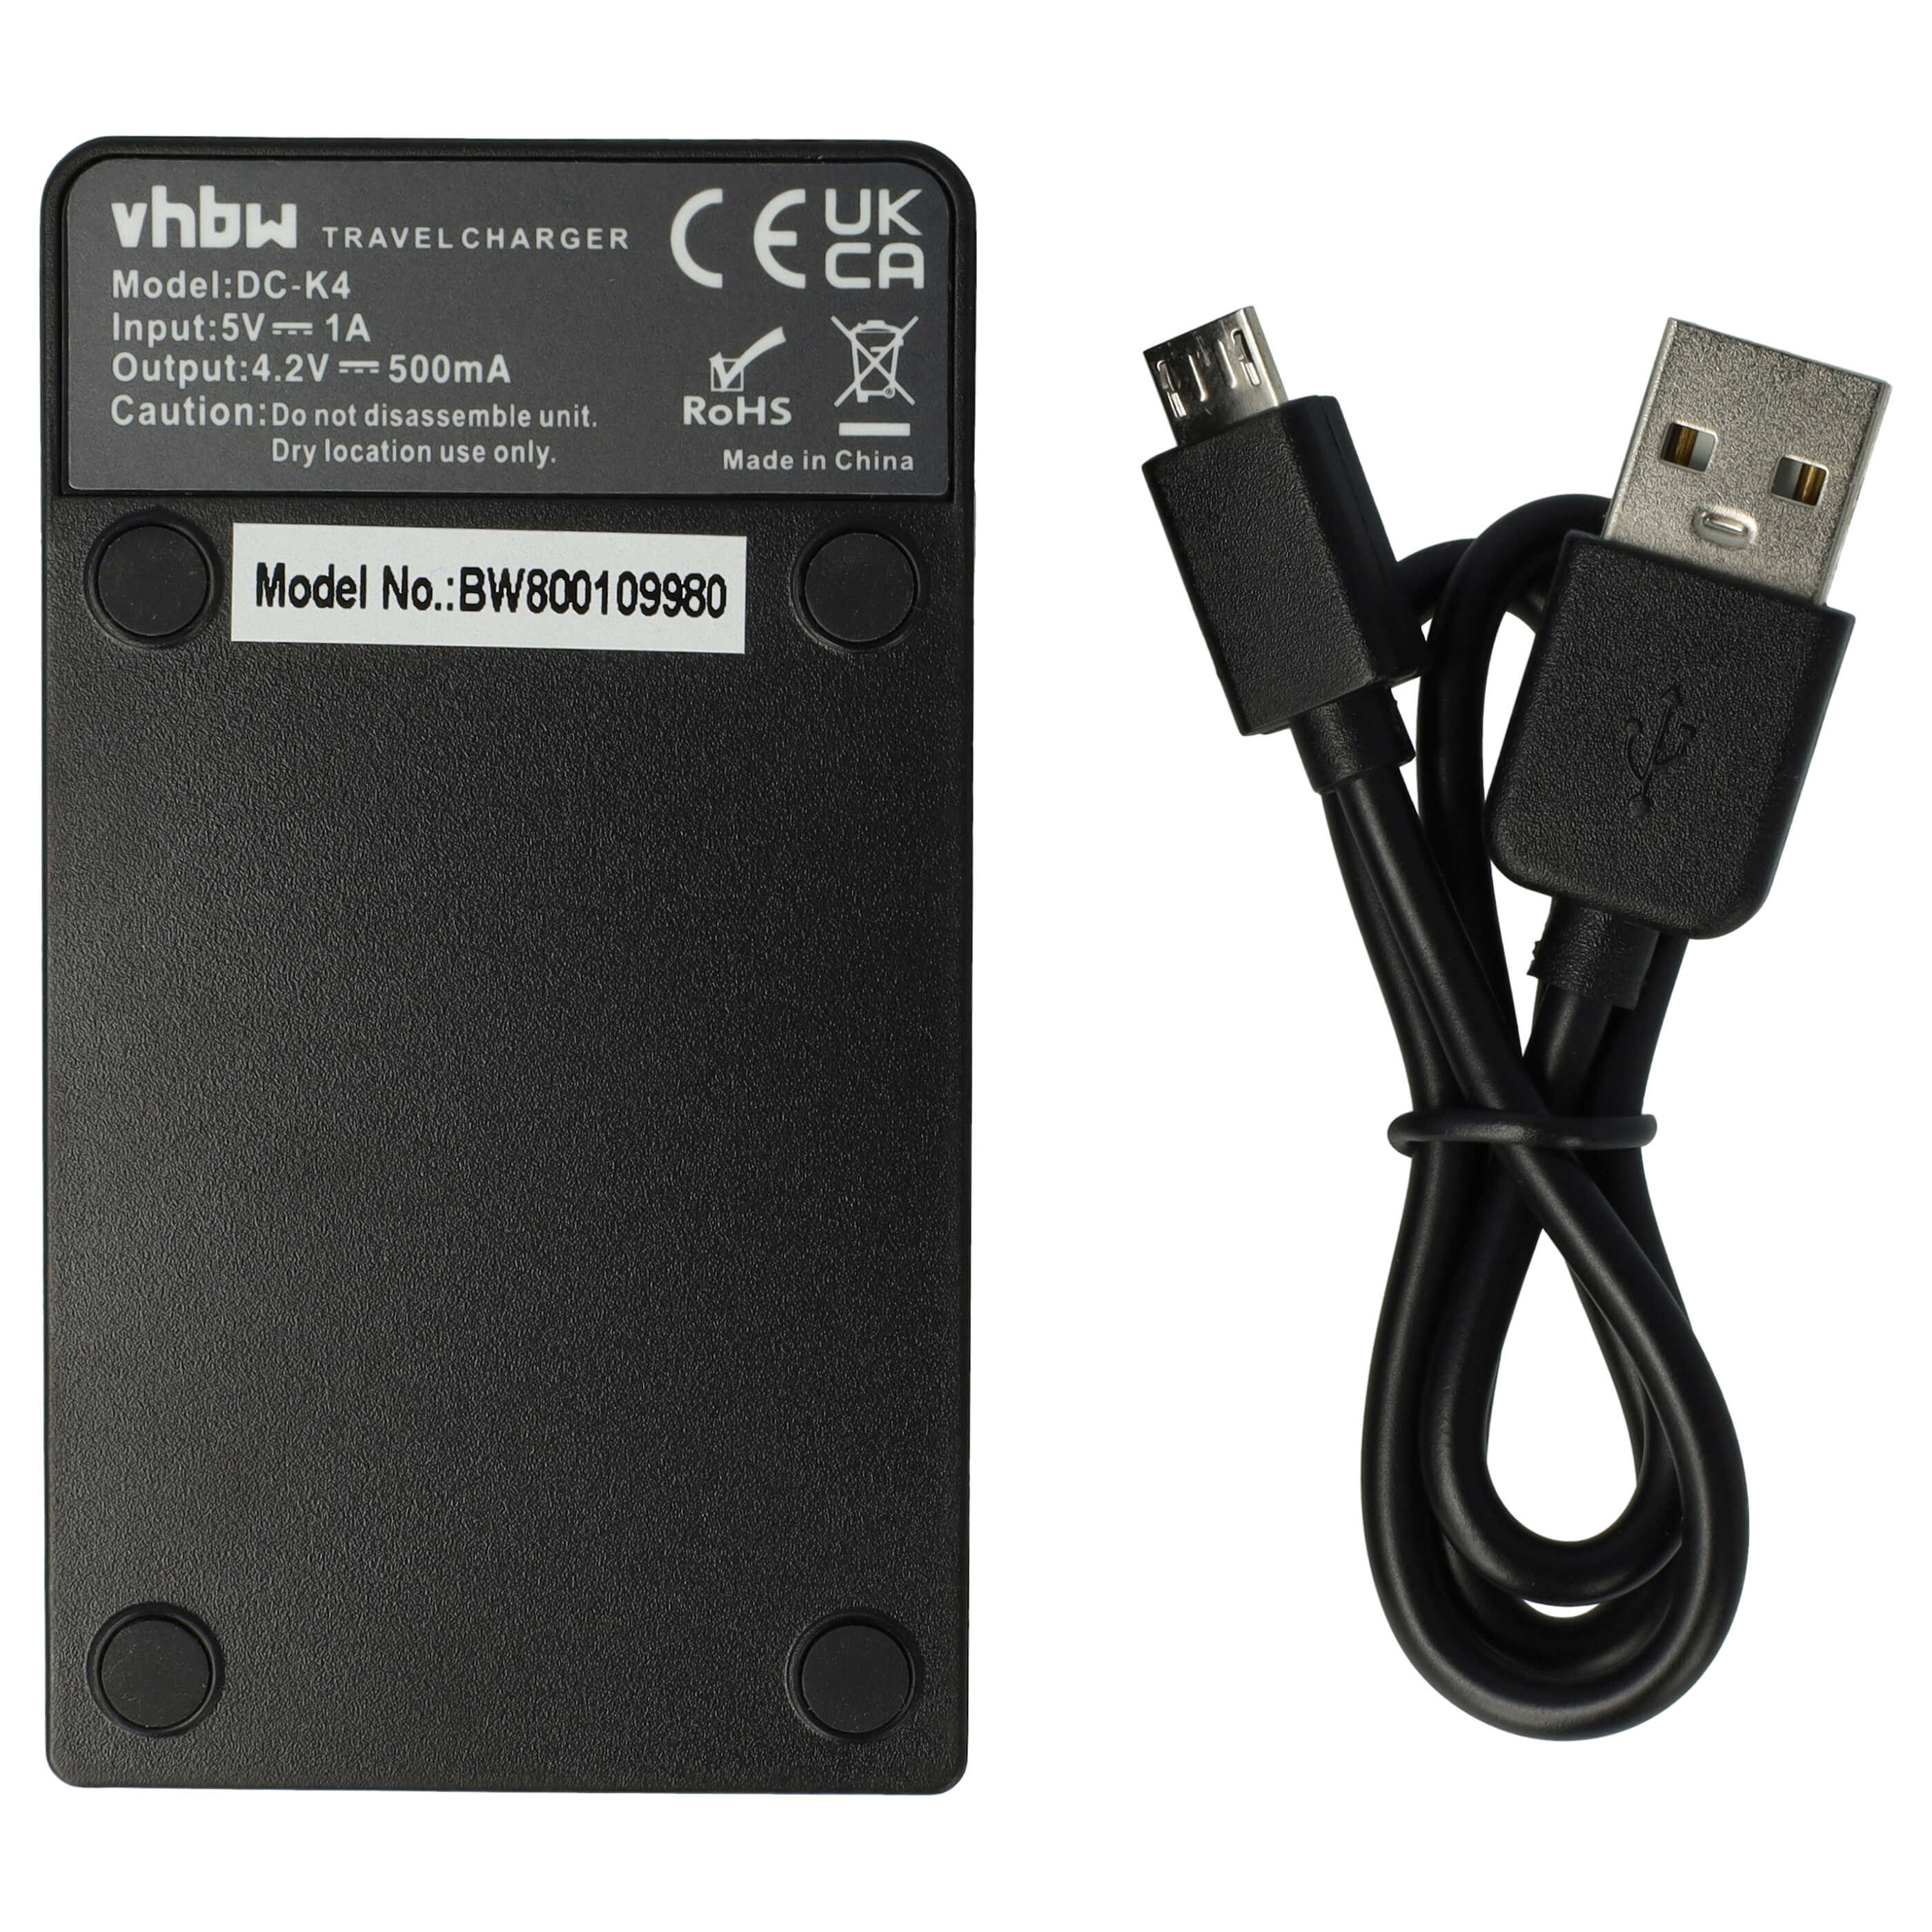 Ładowarka Micro USB do baterii telefonu SHW-M410 Samsung - stacja dokująca + kabel, 40 cm